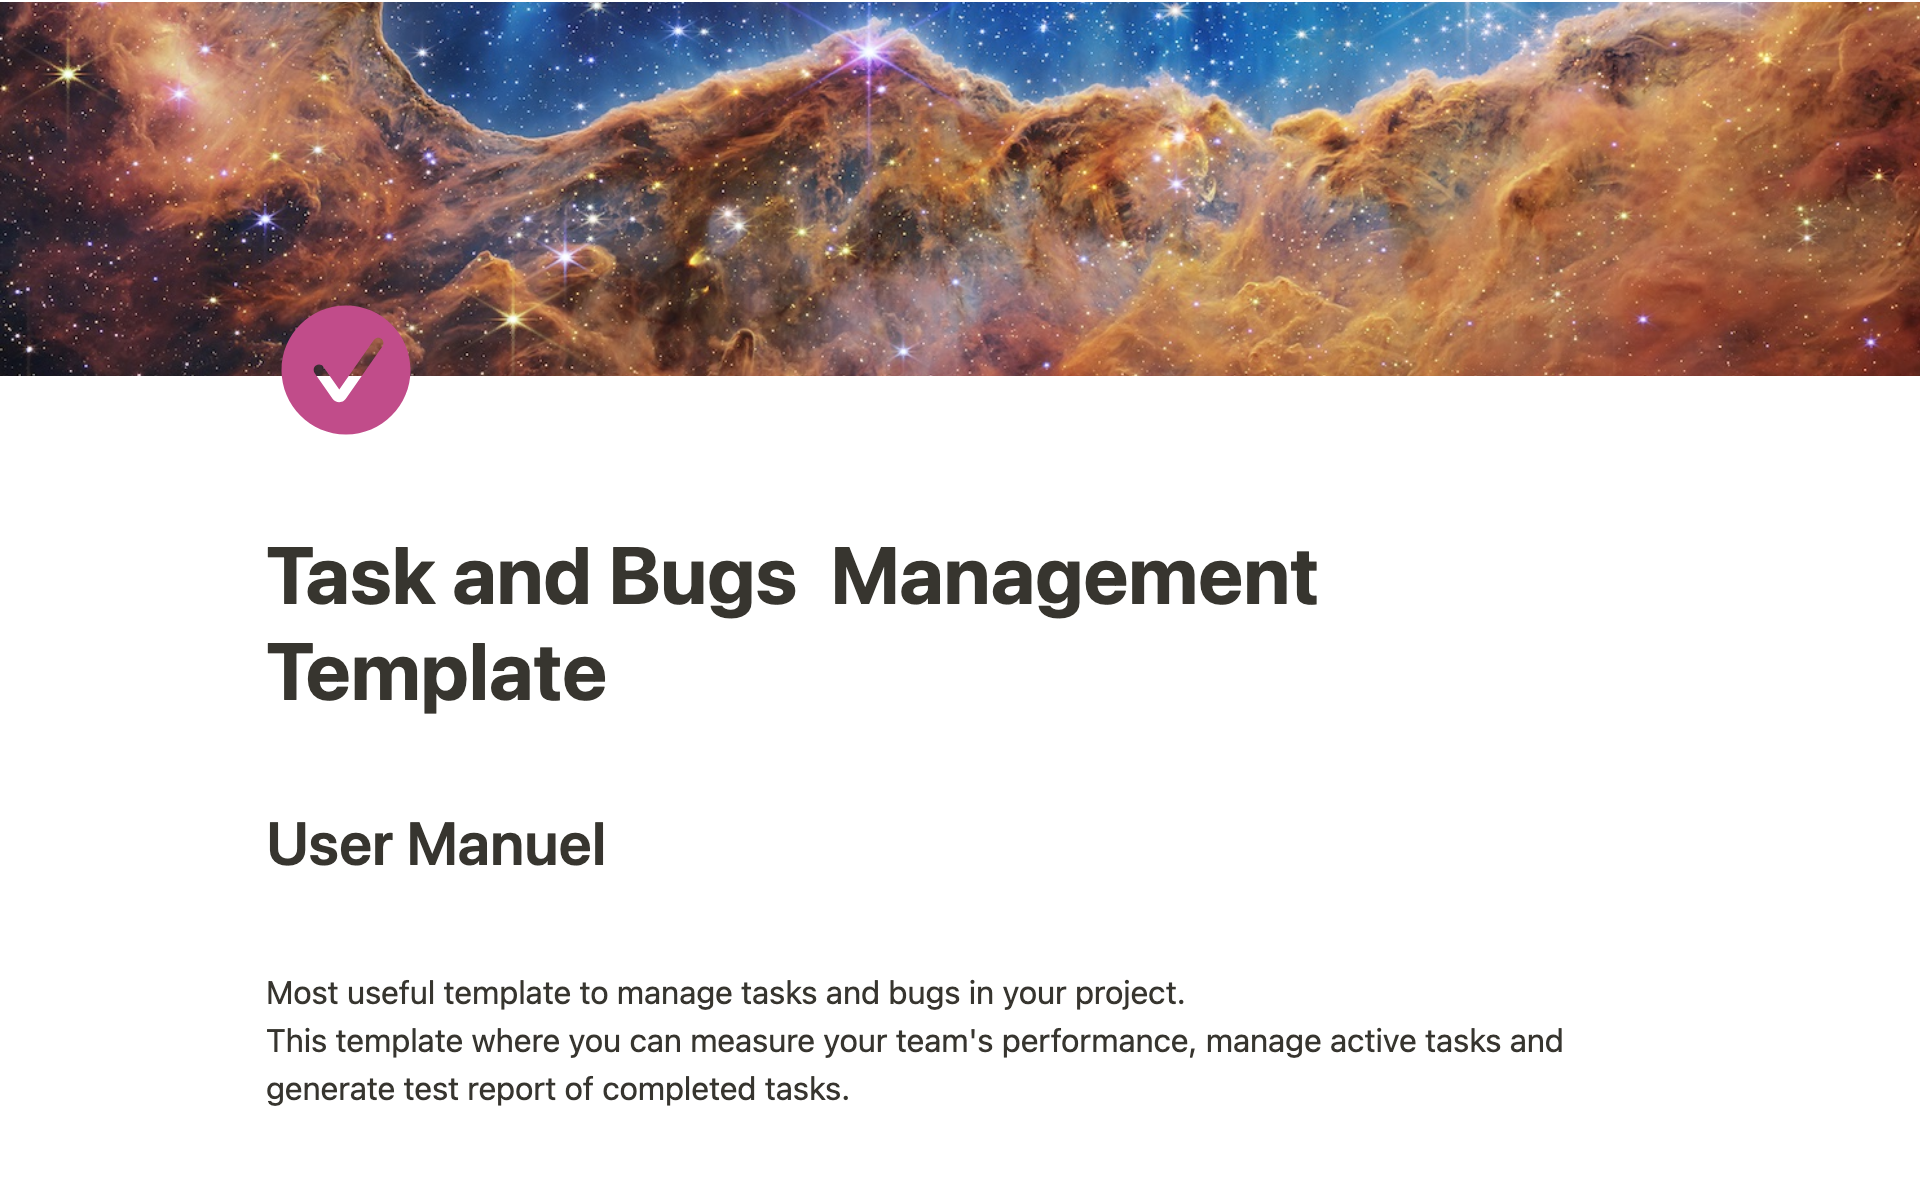 Aperçu du modèle de Task and Bugs Management Template